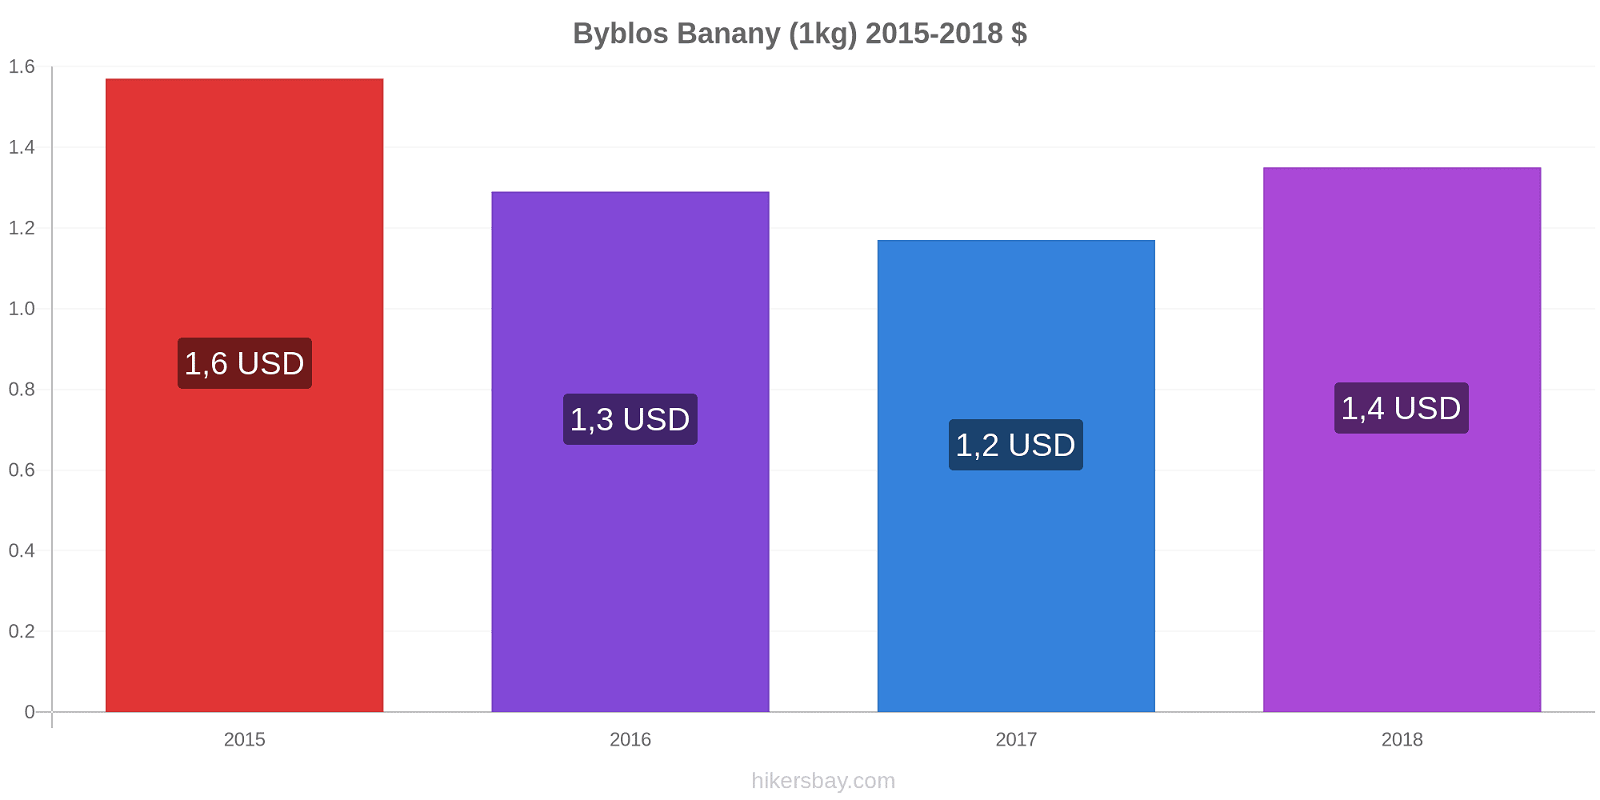 Byblos zmiany cen Banany (1kg) hikersbay.com